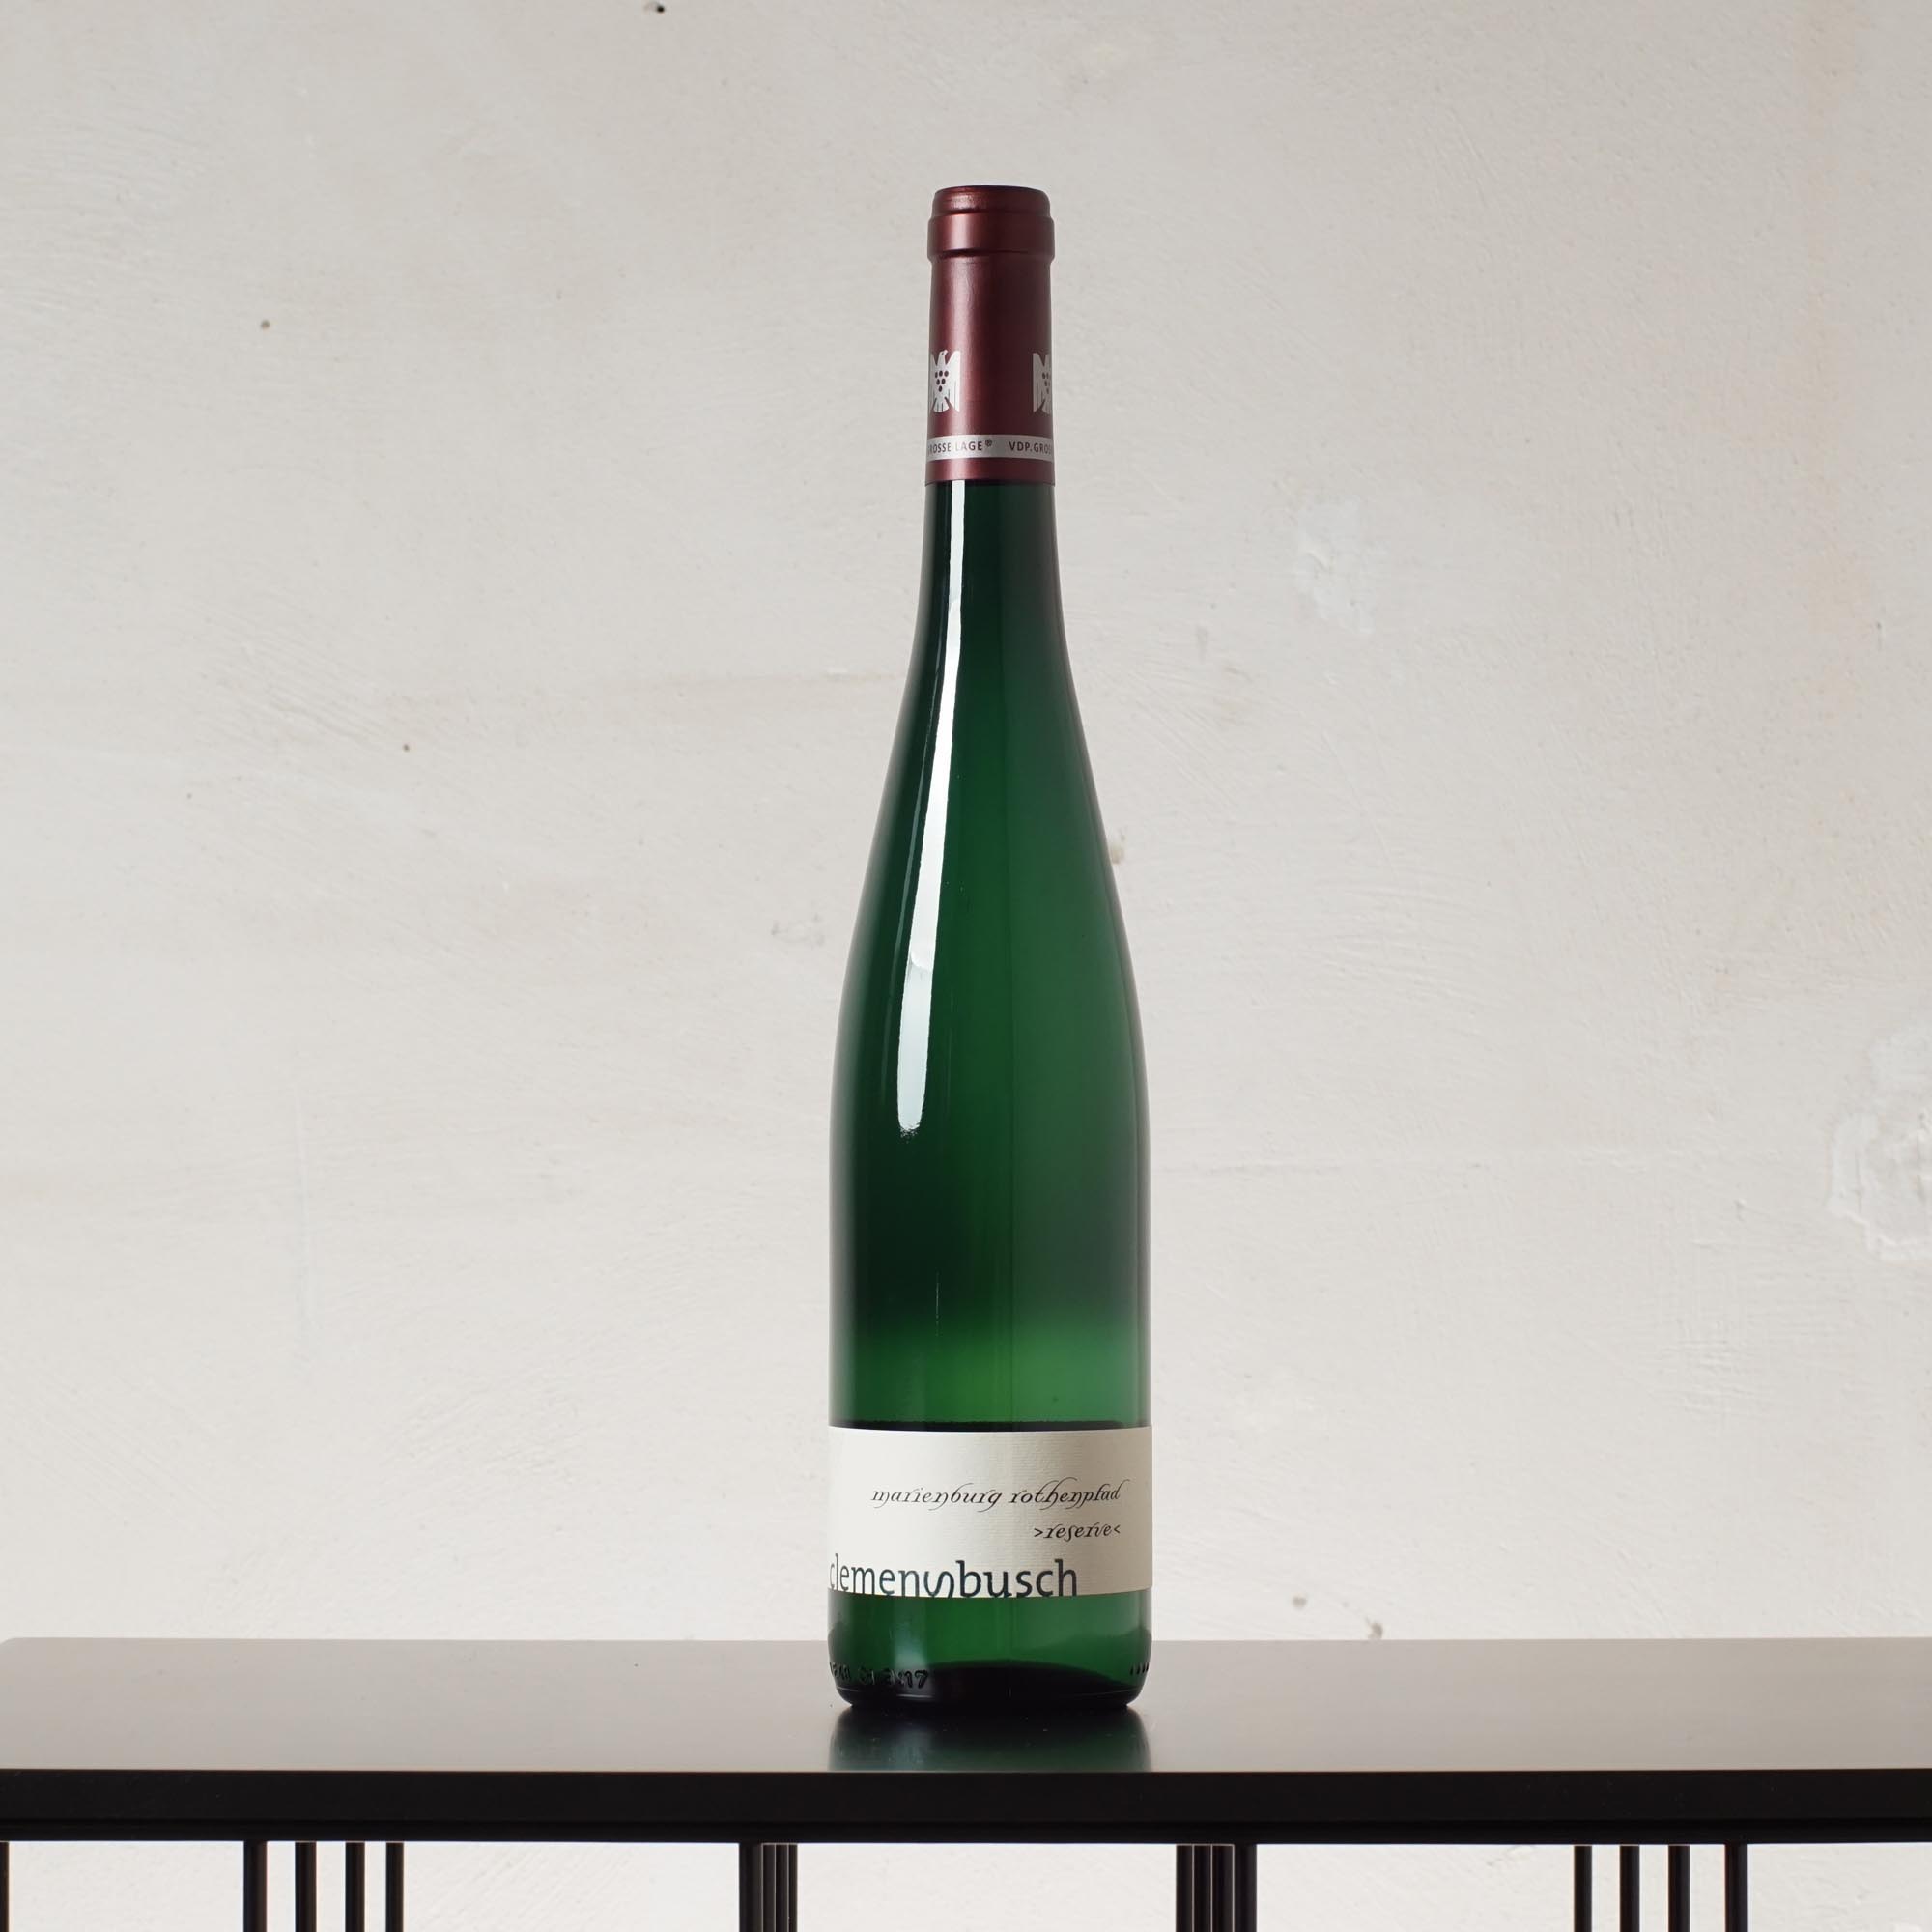 Marienburg Rothenpfad Reserve Qualitätswein trocken 2018